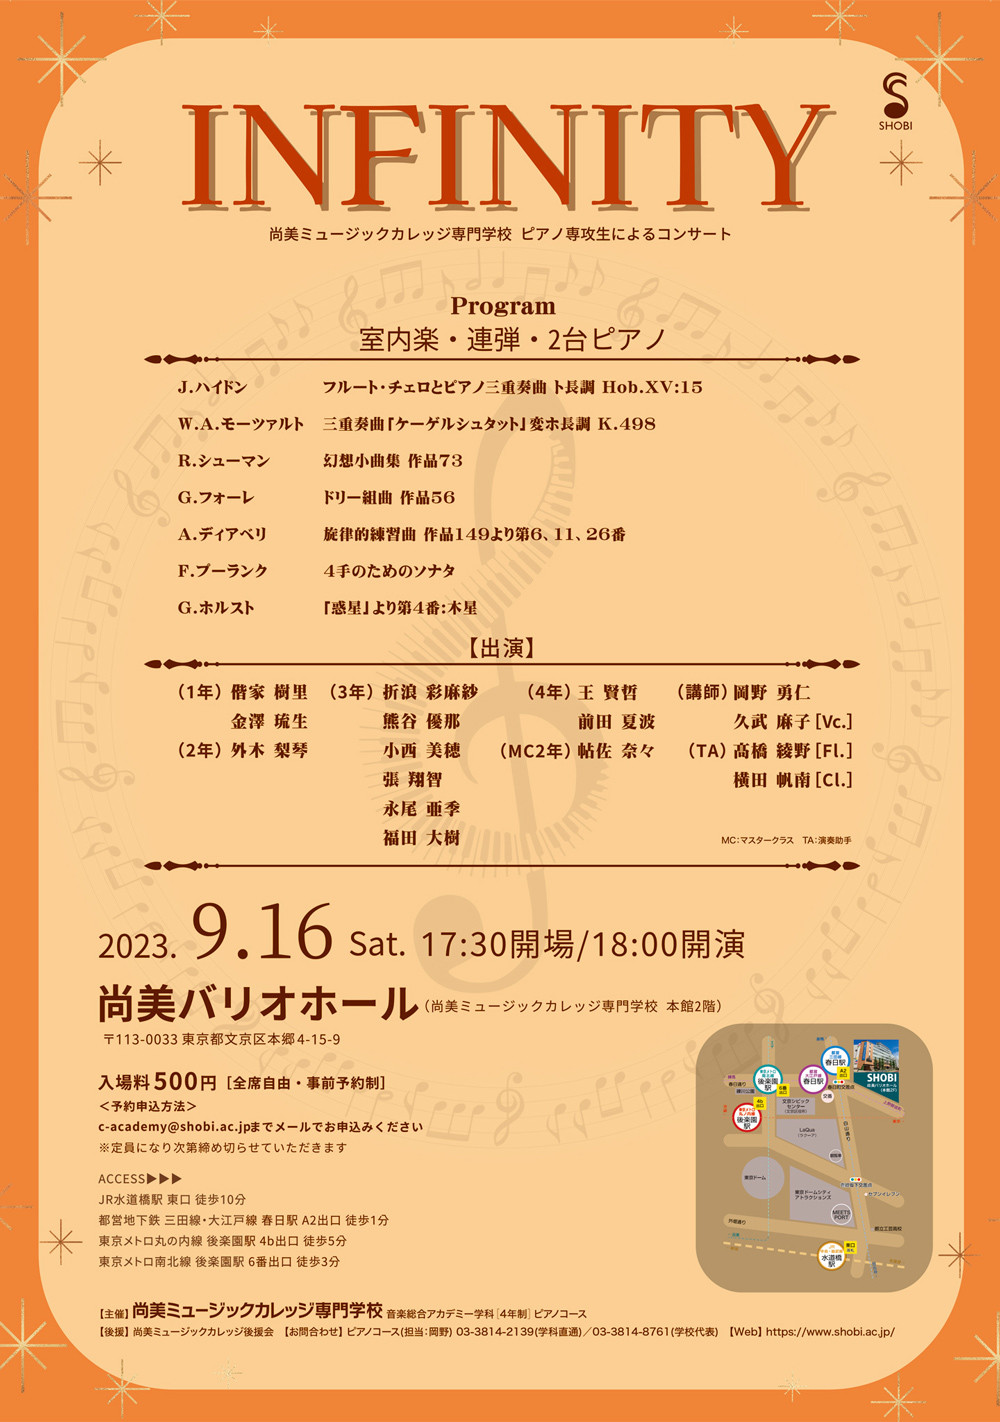 【9月16日開催】音楽総合アカデミー学科ピアノコースコンサート「INFINITY」